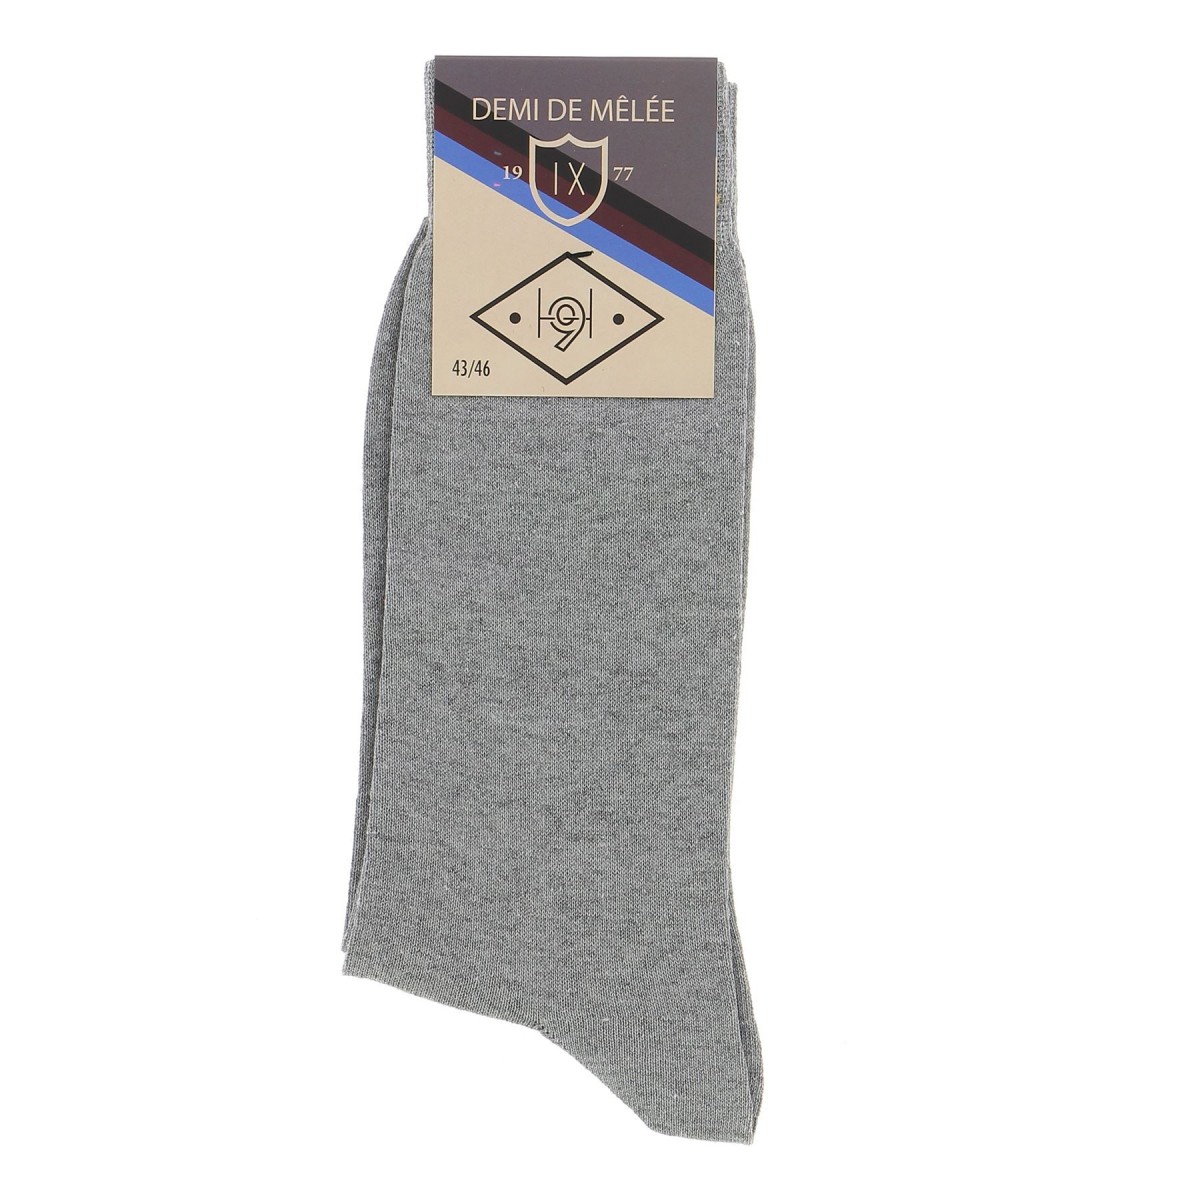 Chaussettes homme Demi de mêlée grises - Matière noble 2,90€